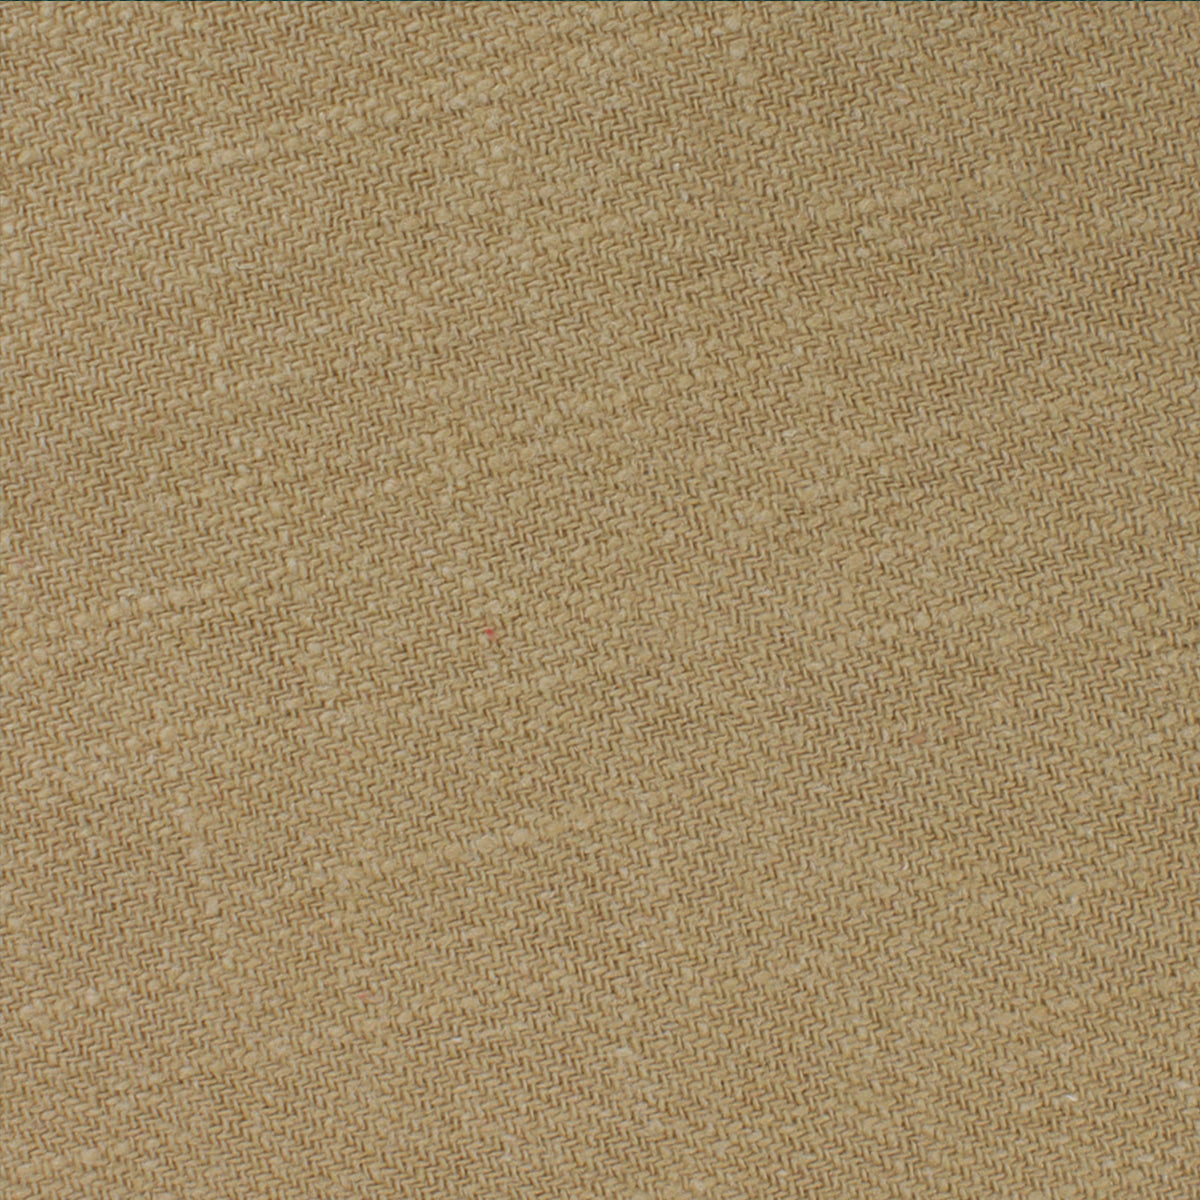 Dark Khaki Tan Linen Pocket Square Fabric